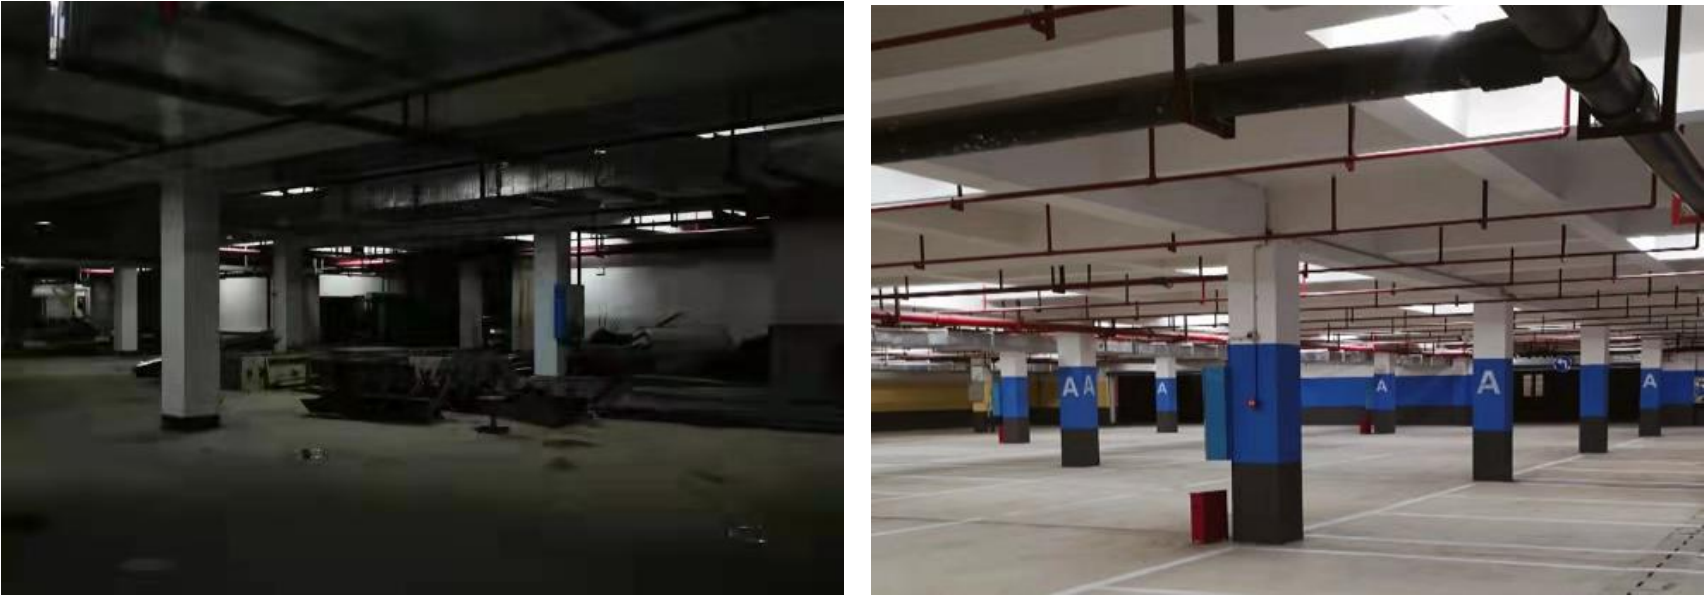 地下停车场改造前后对比图。